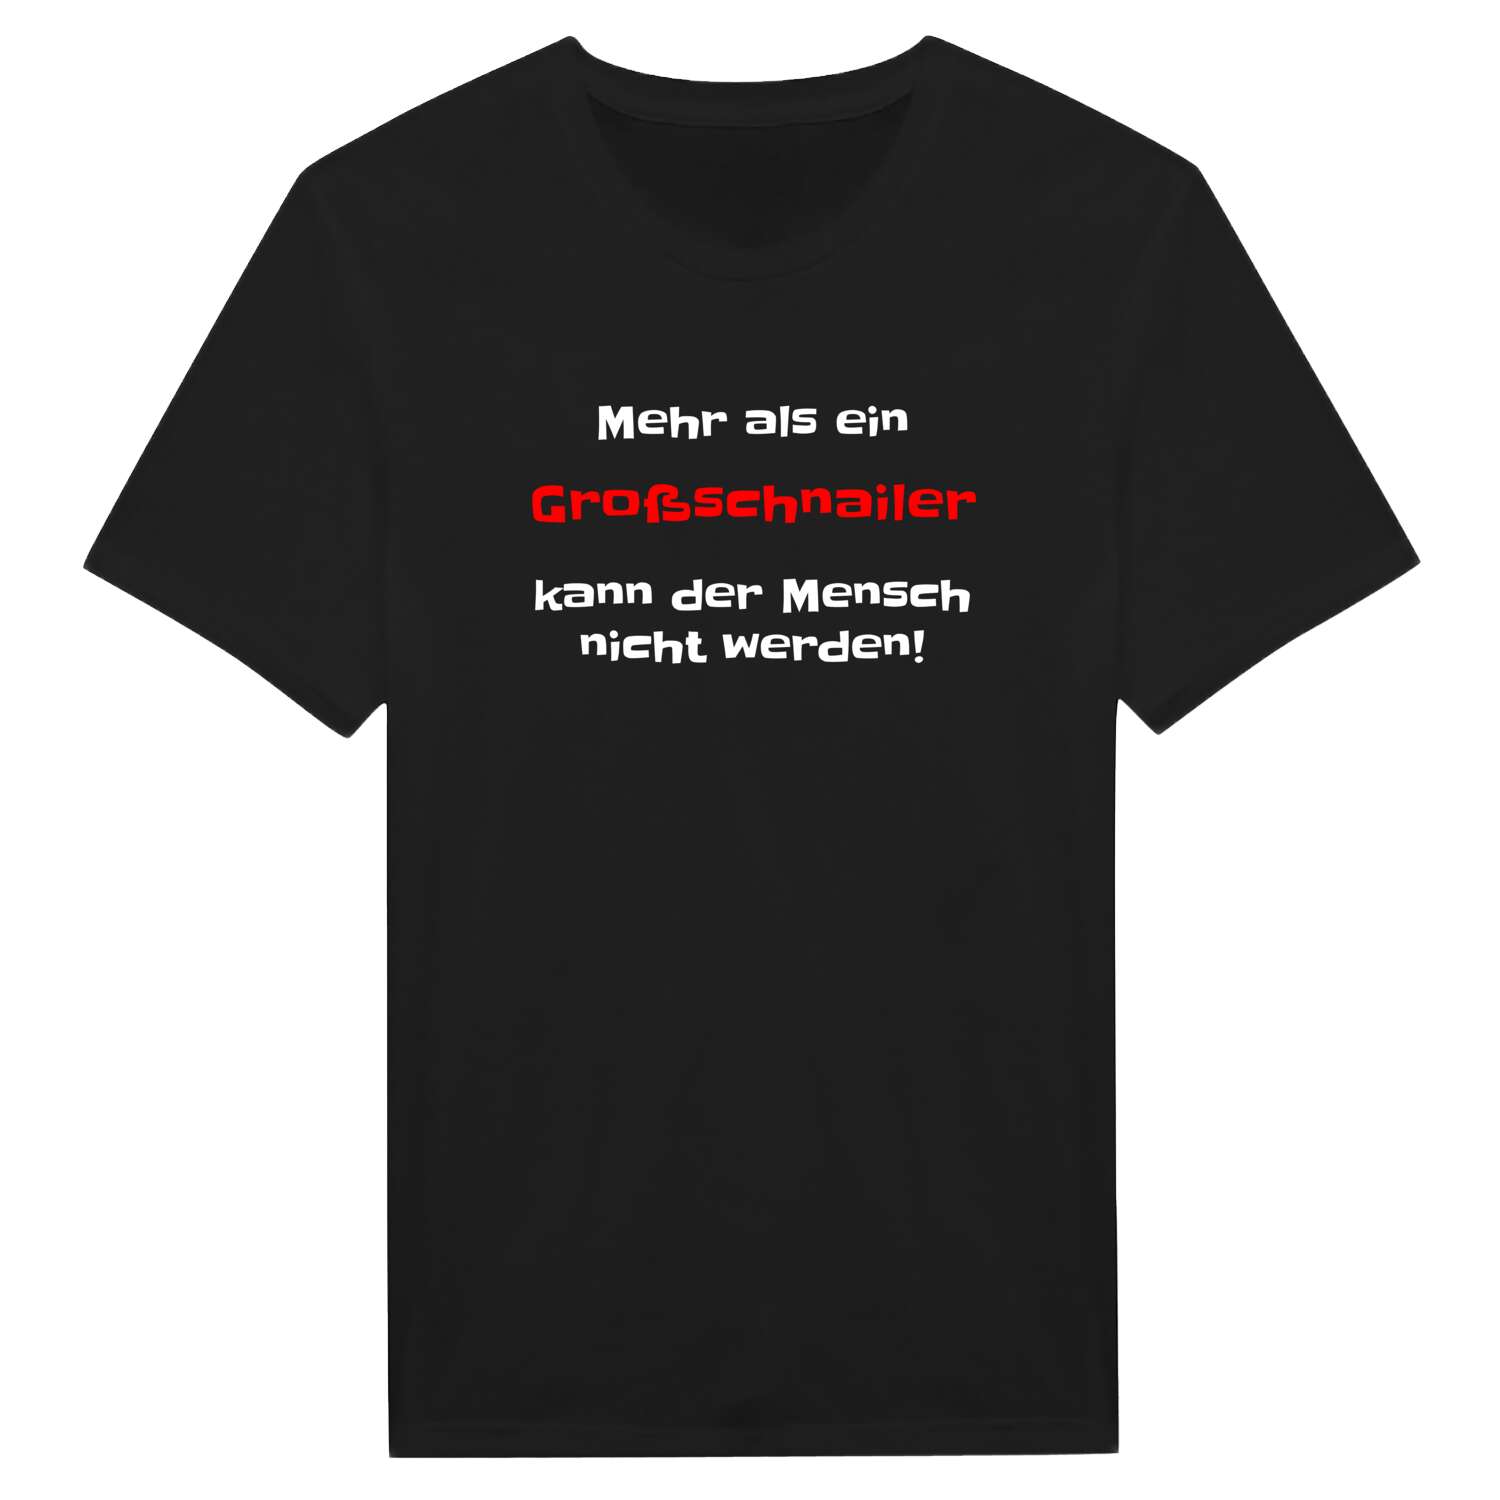 Großschnail T-Shirt »Mehr als ein«